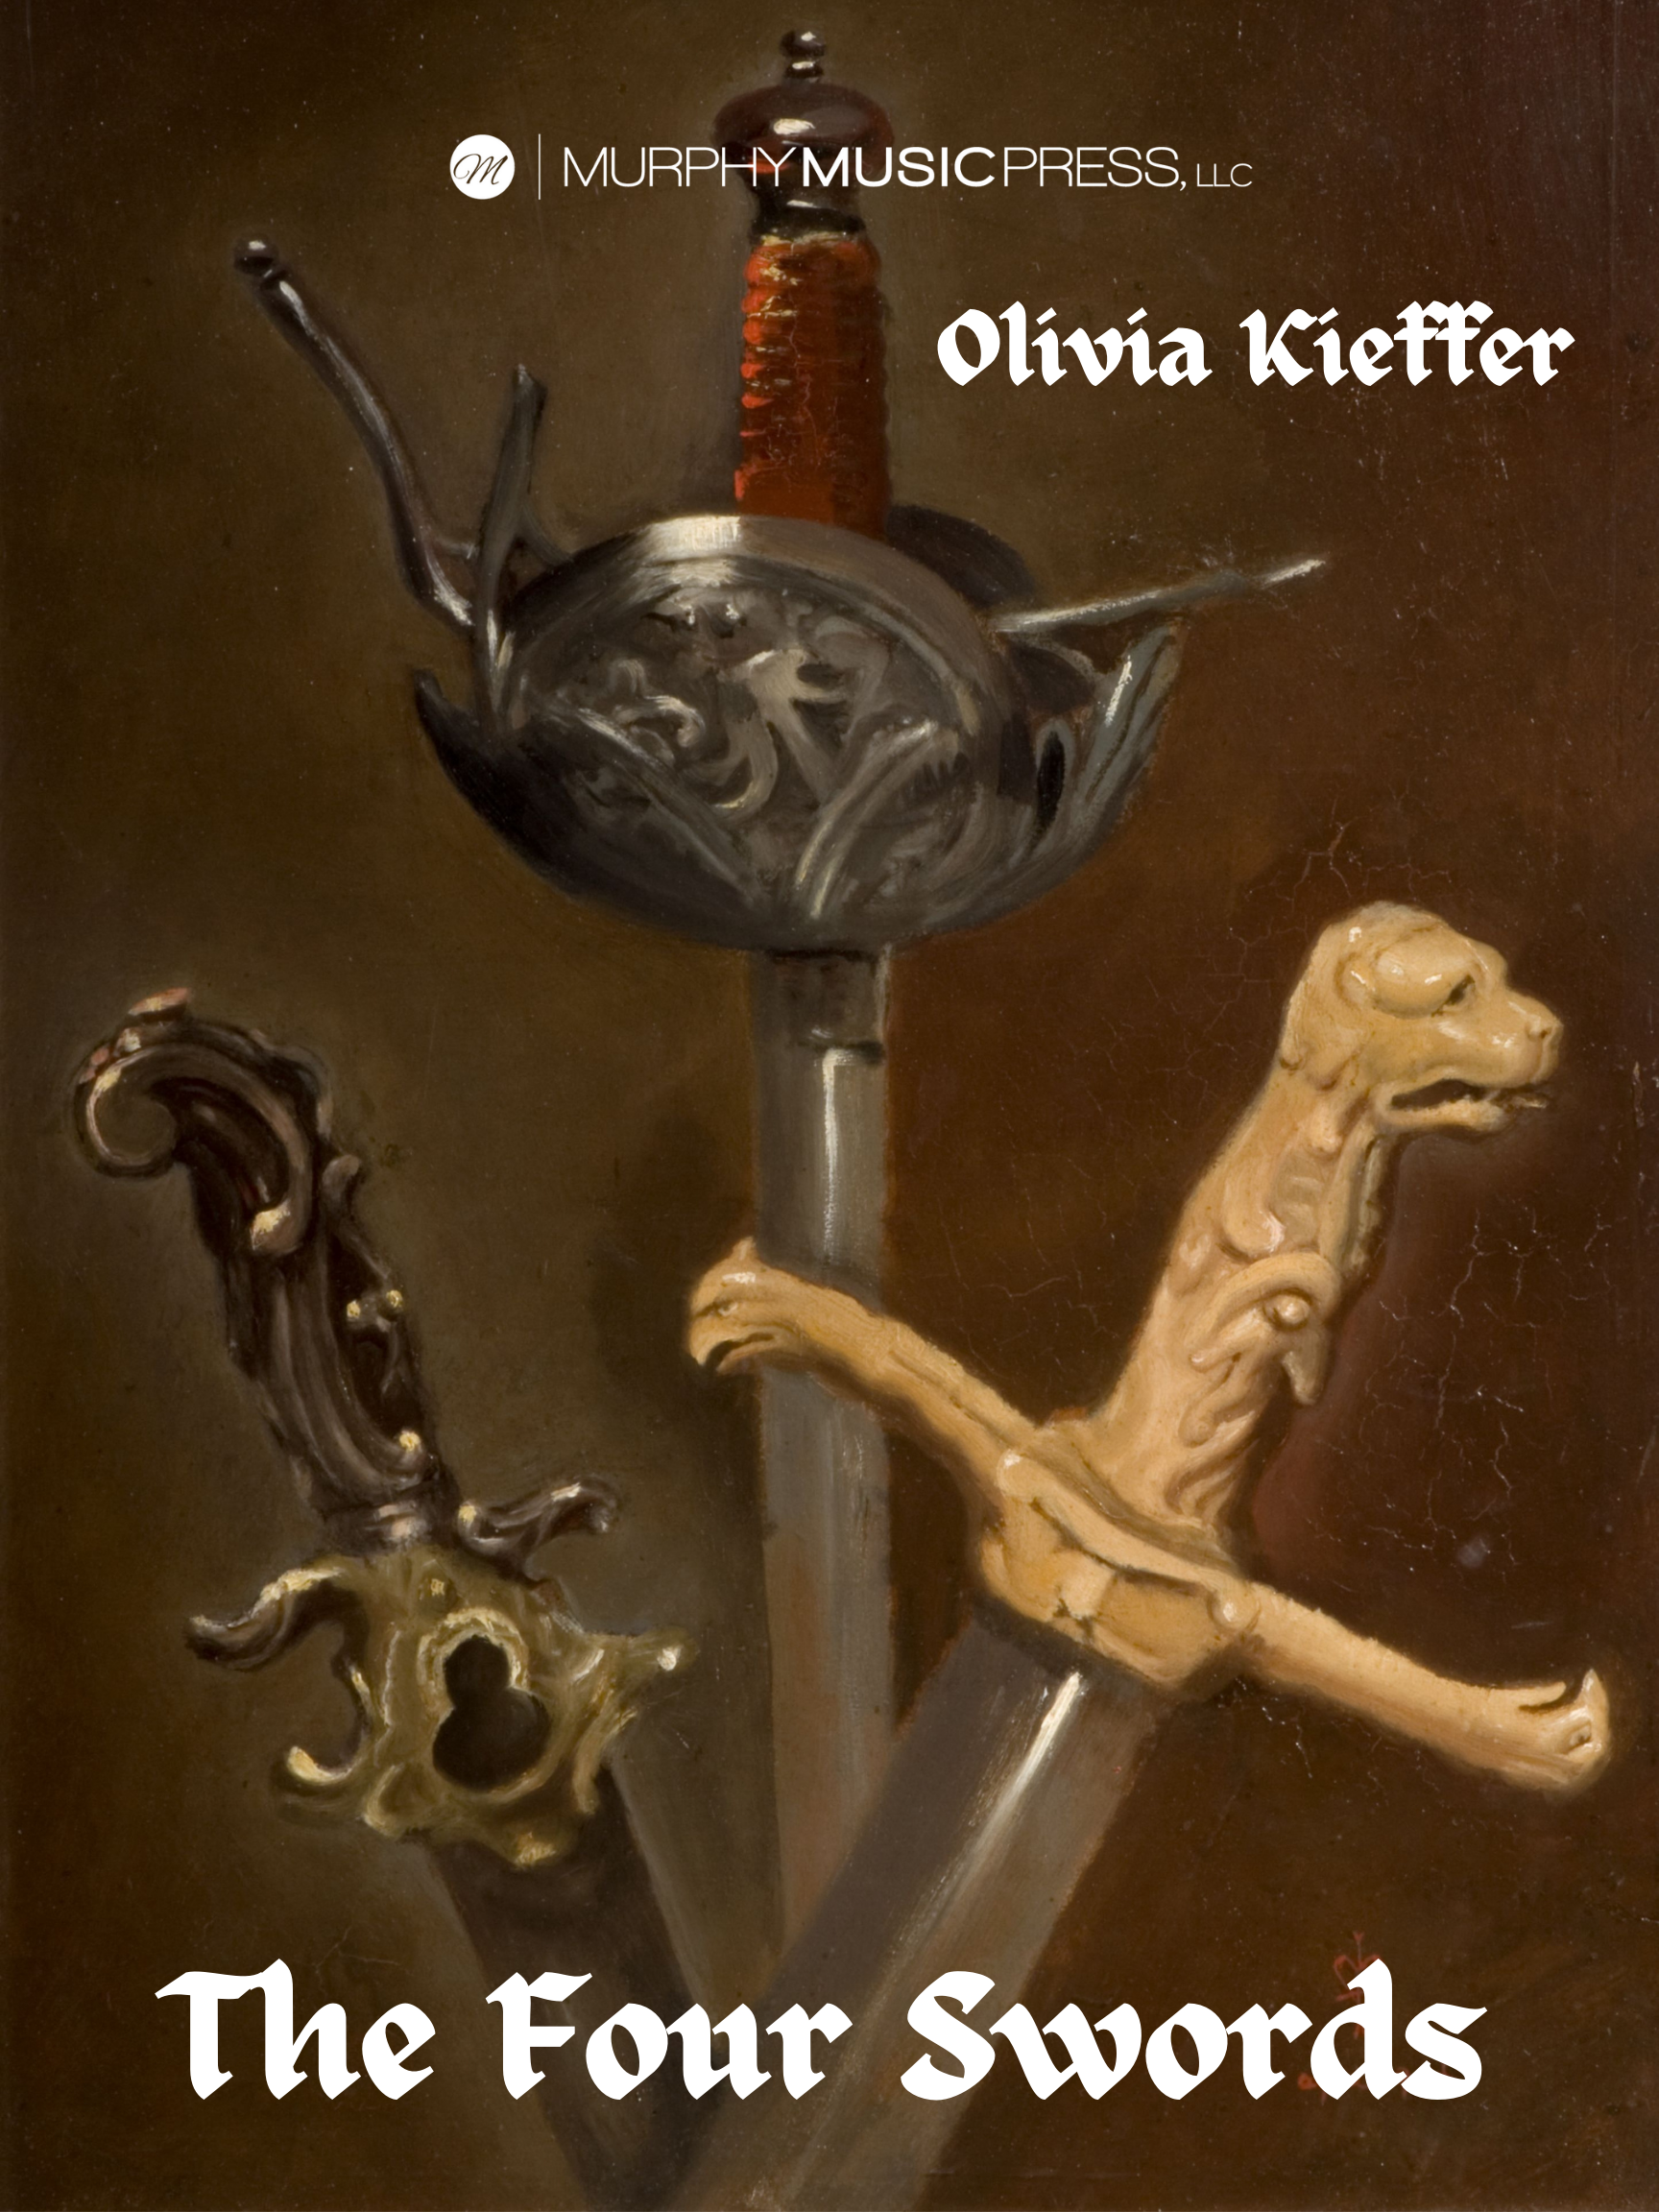 The Four Swords by Olivia Kieffer